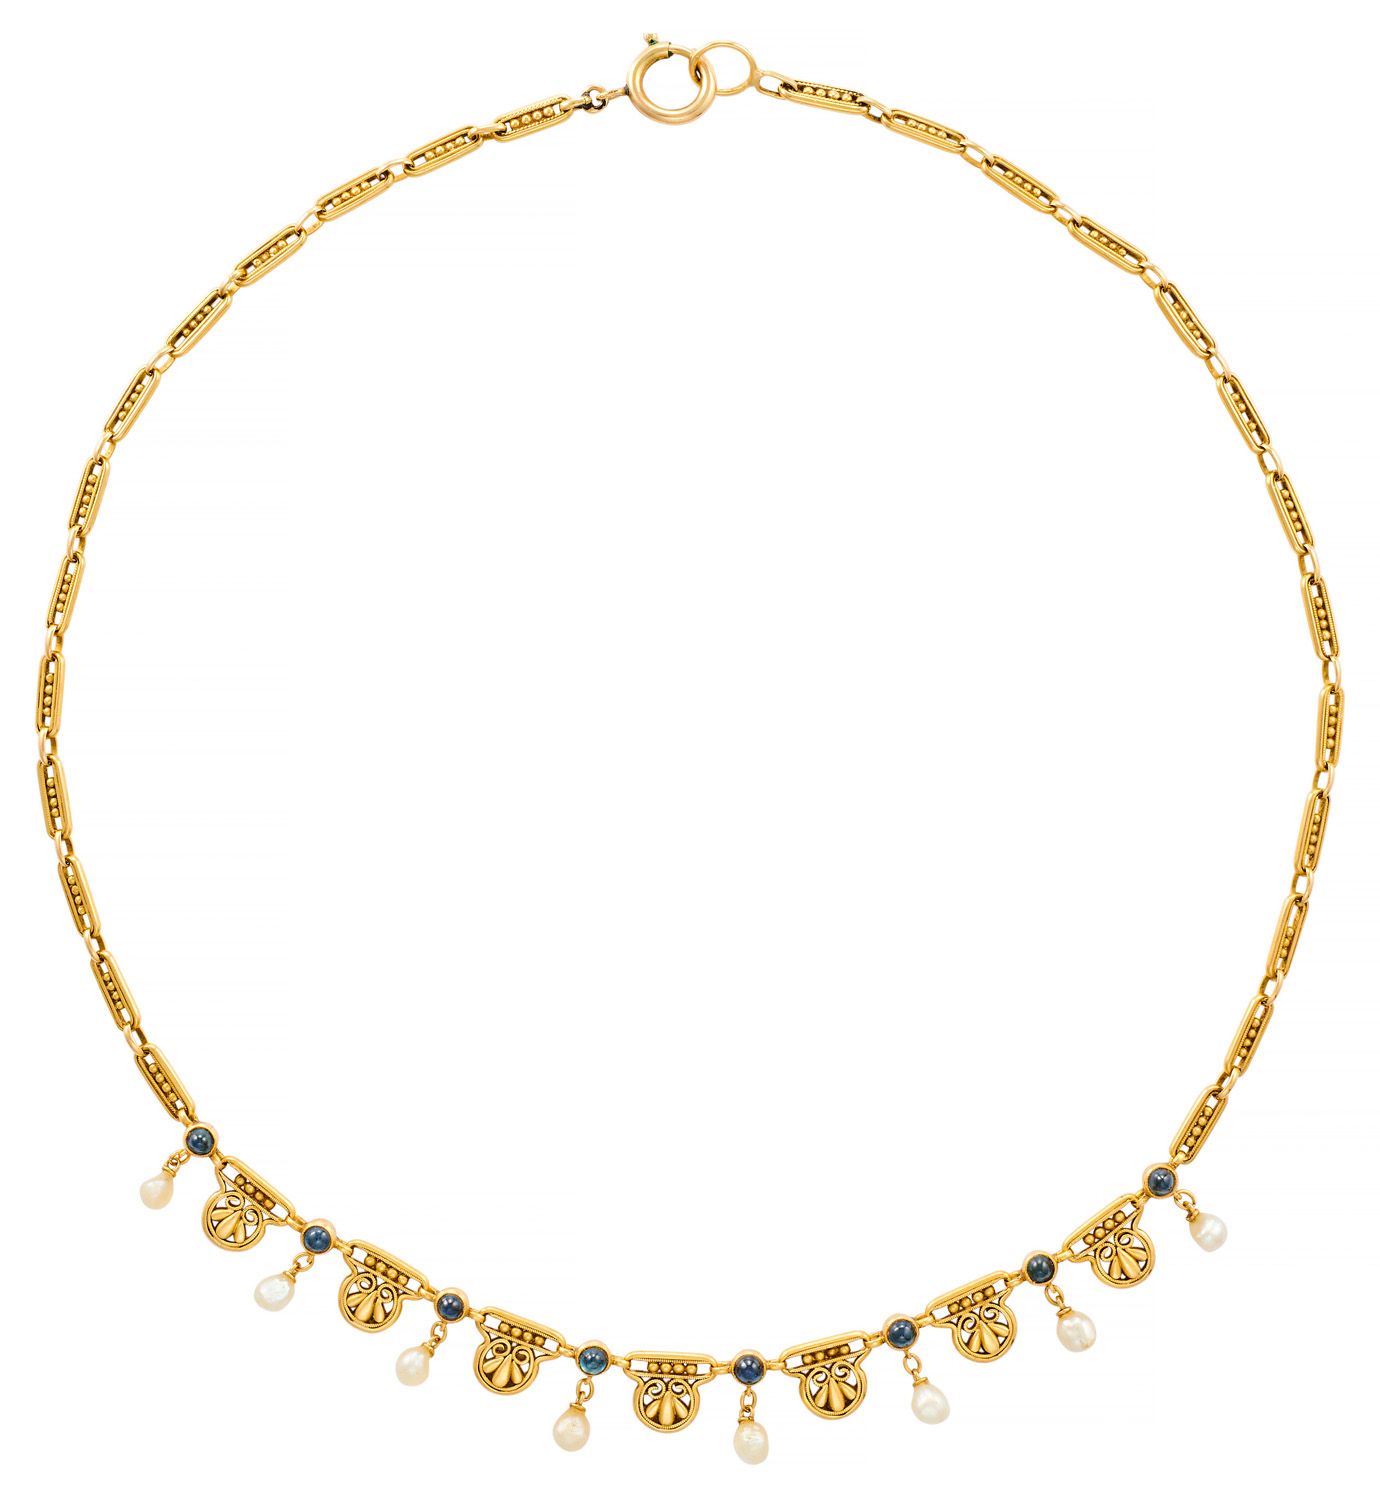 Collier draperie aus Gelbgold mit durchbrochenen Elementen, die feine Perlen als&hellip;